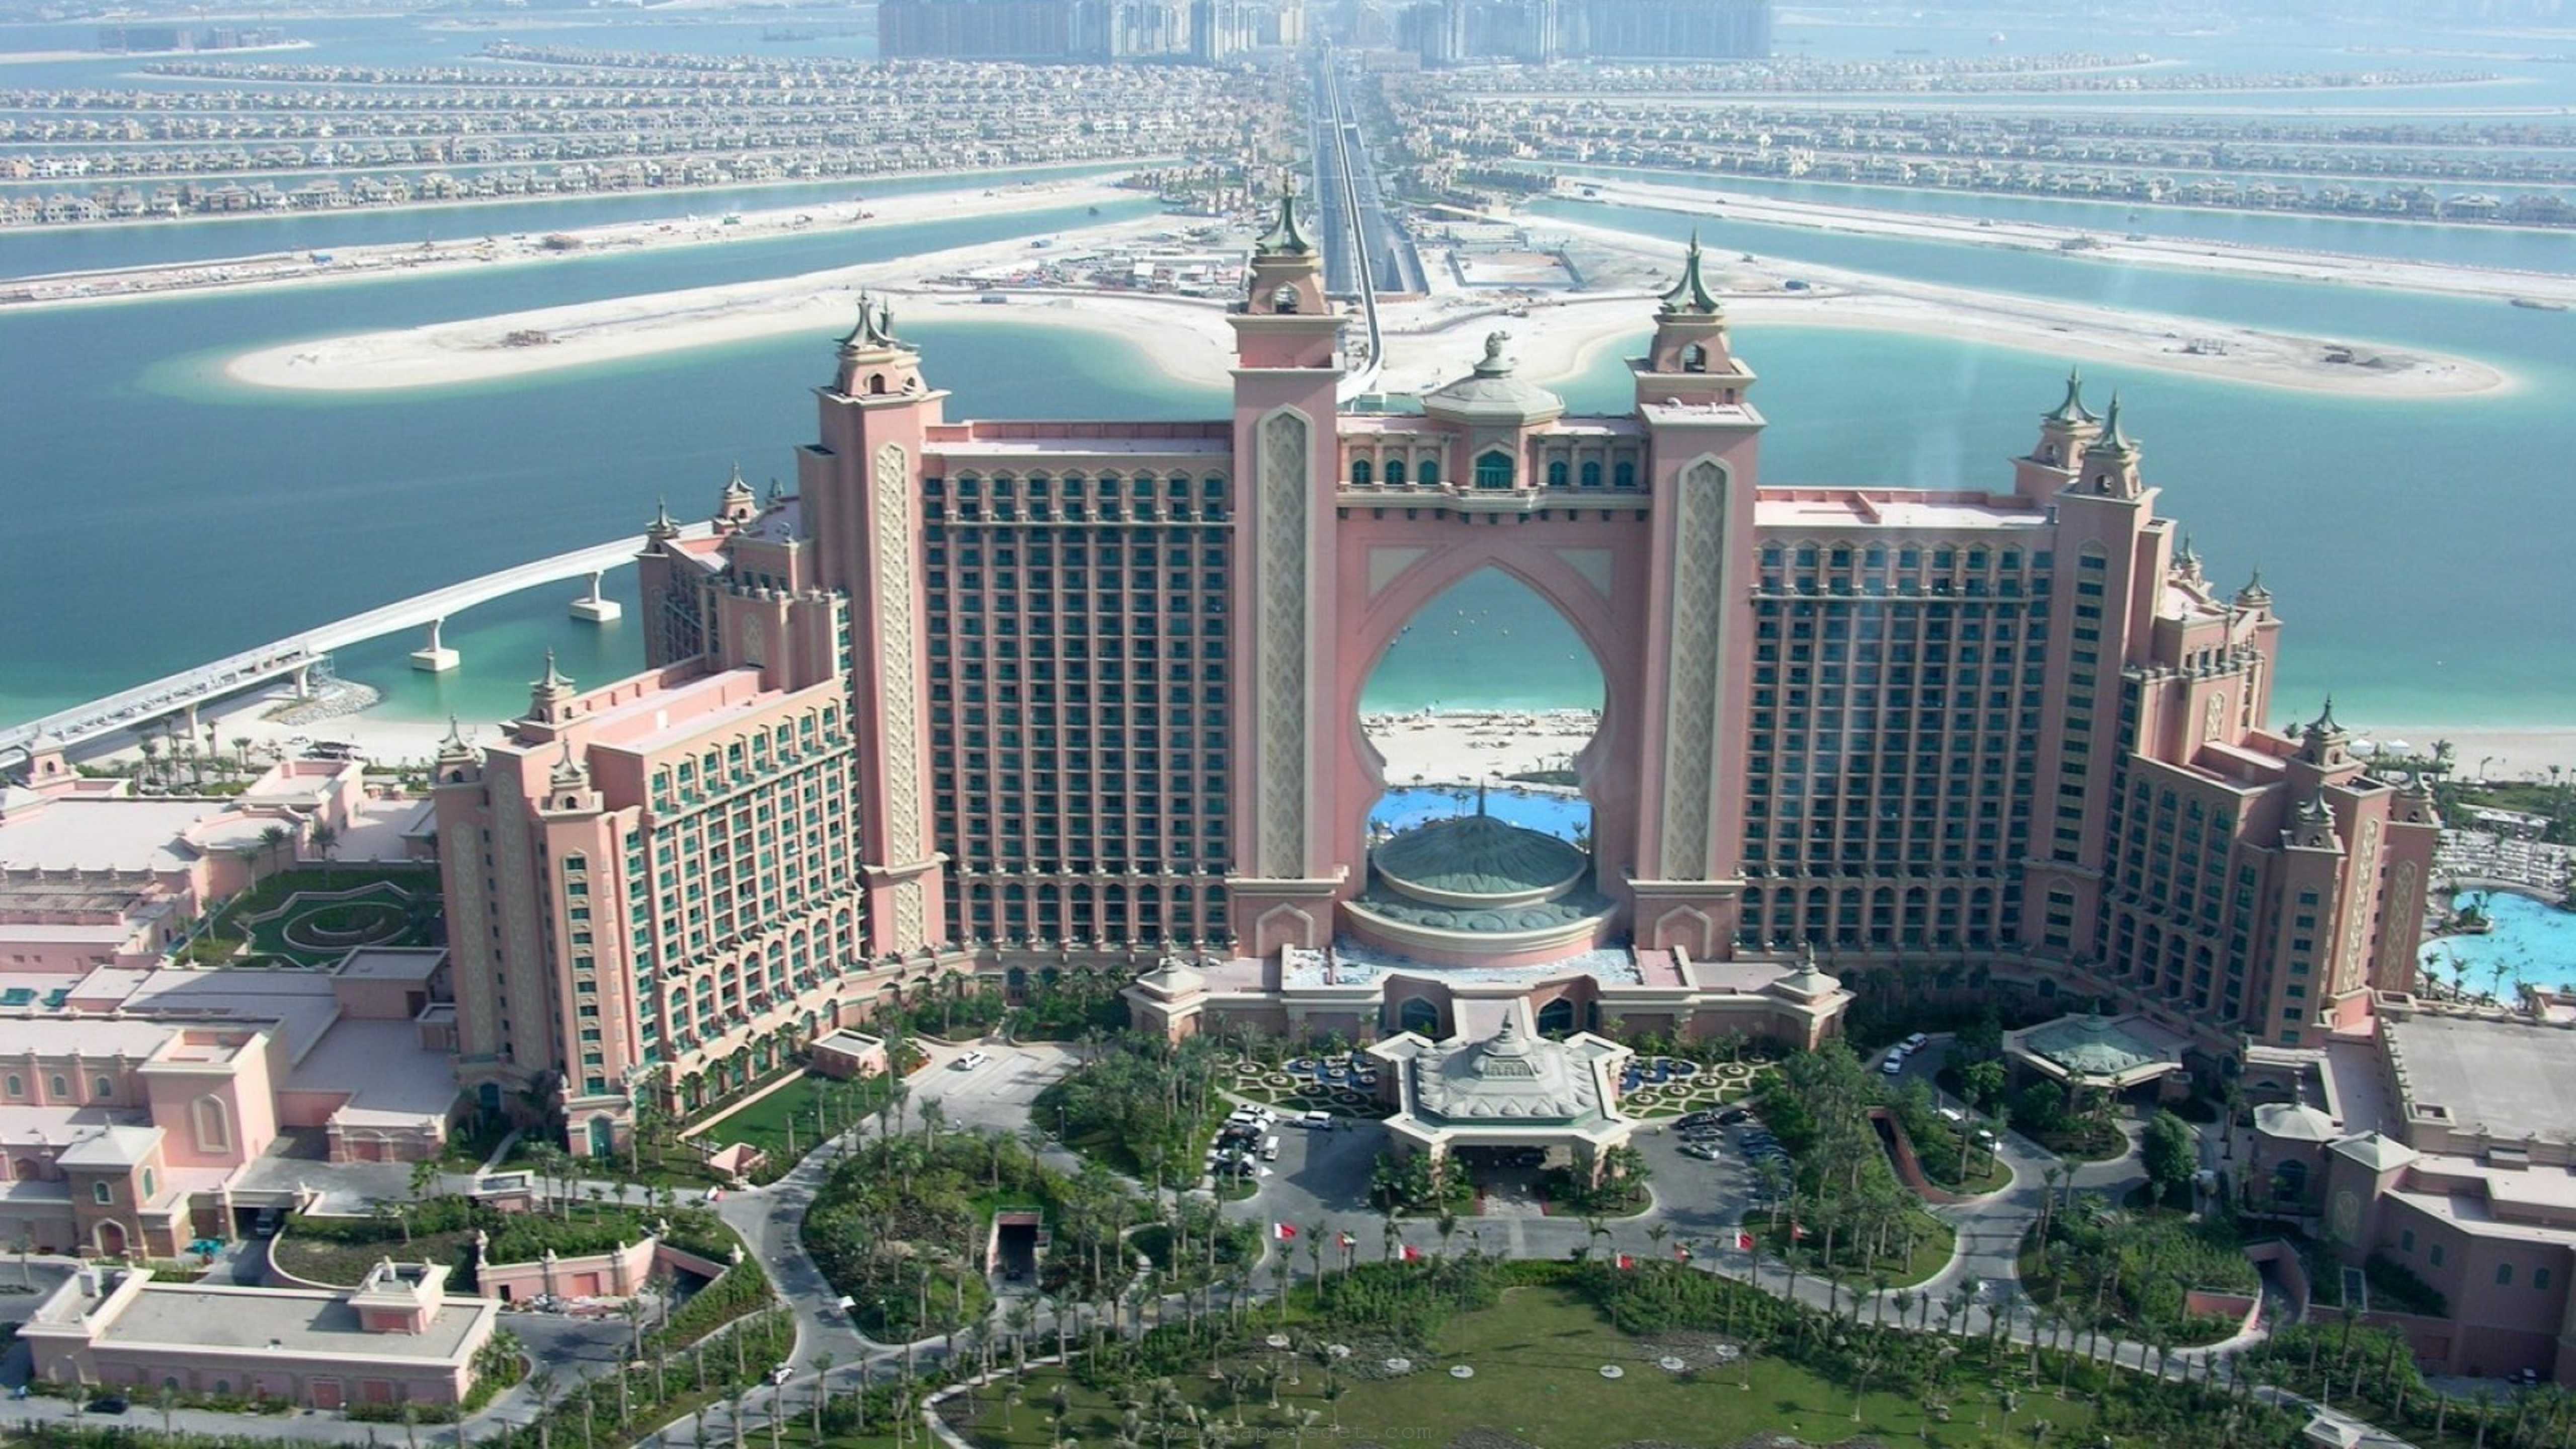 Atlantis Hotel In Dubai Wallpaper Hd 5120×2880 - Dubai Palm Island Hotel Atlantis , HD Wallpaper & Backgrounds